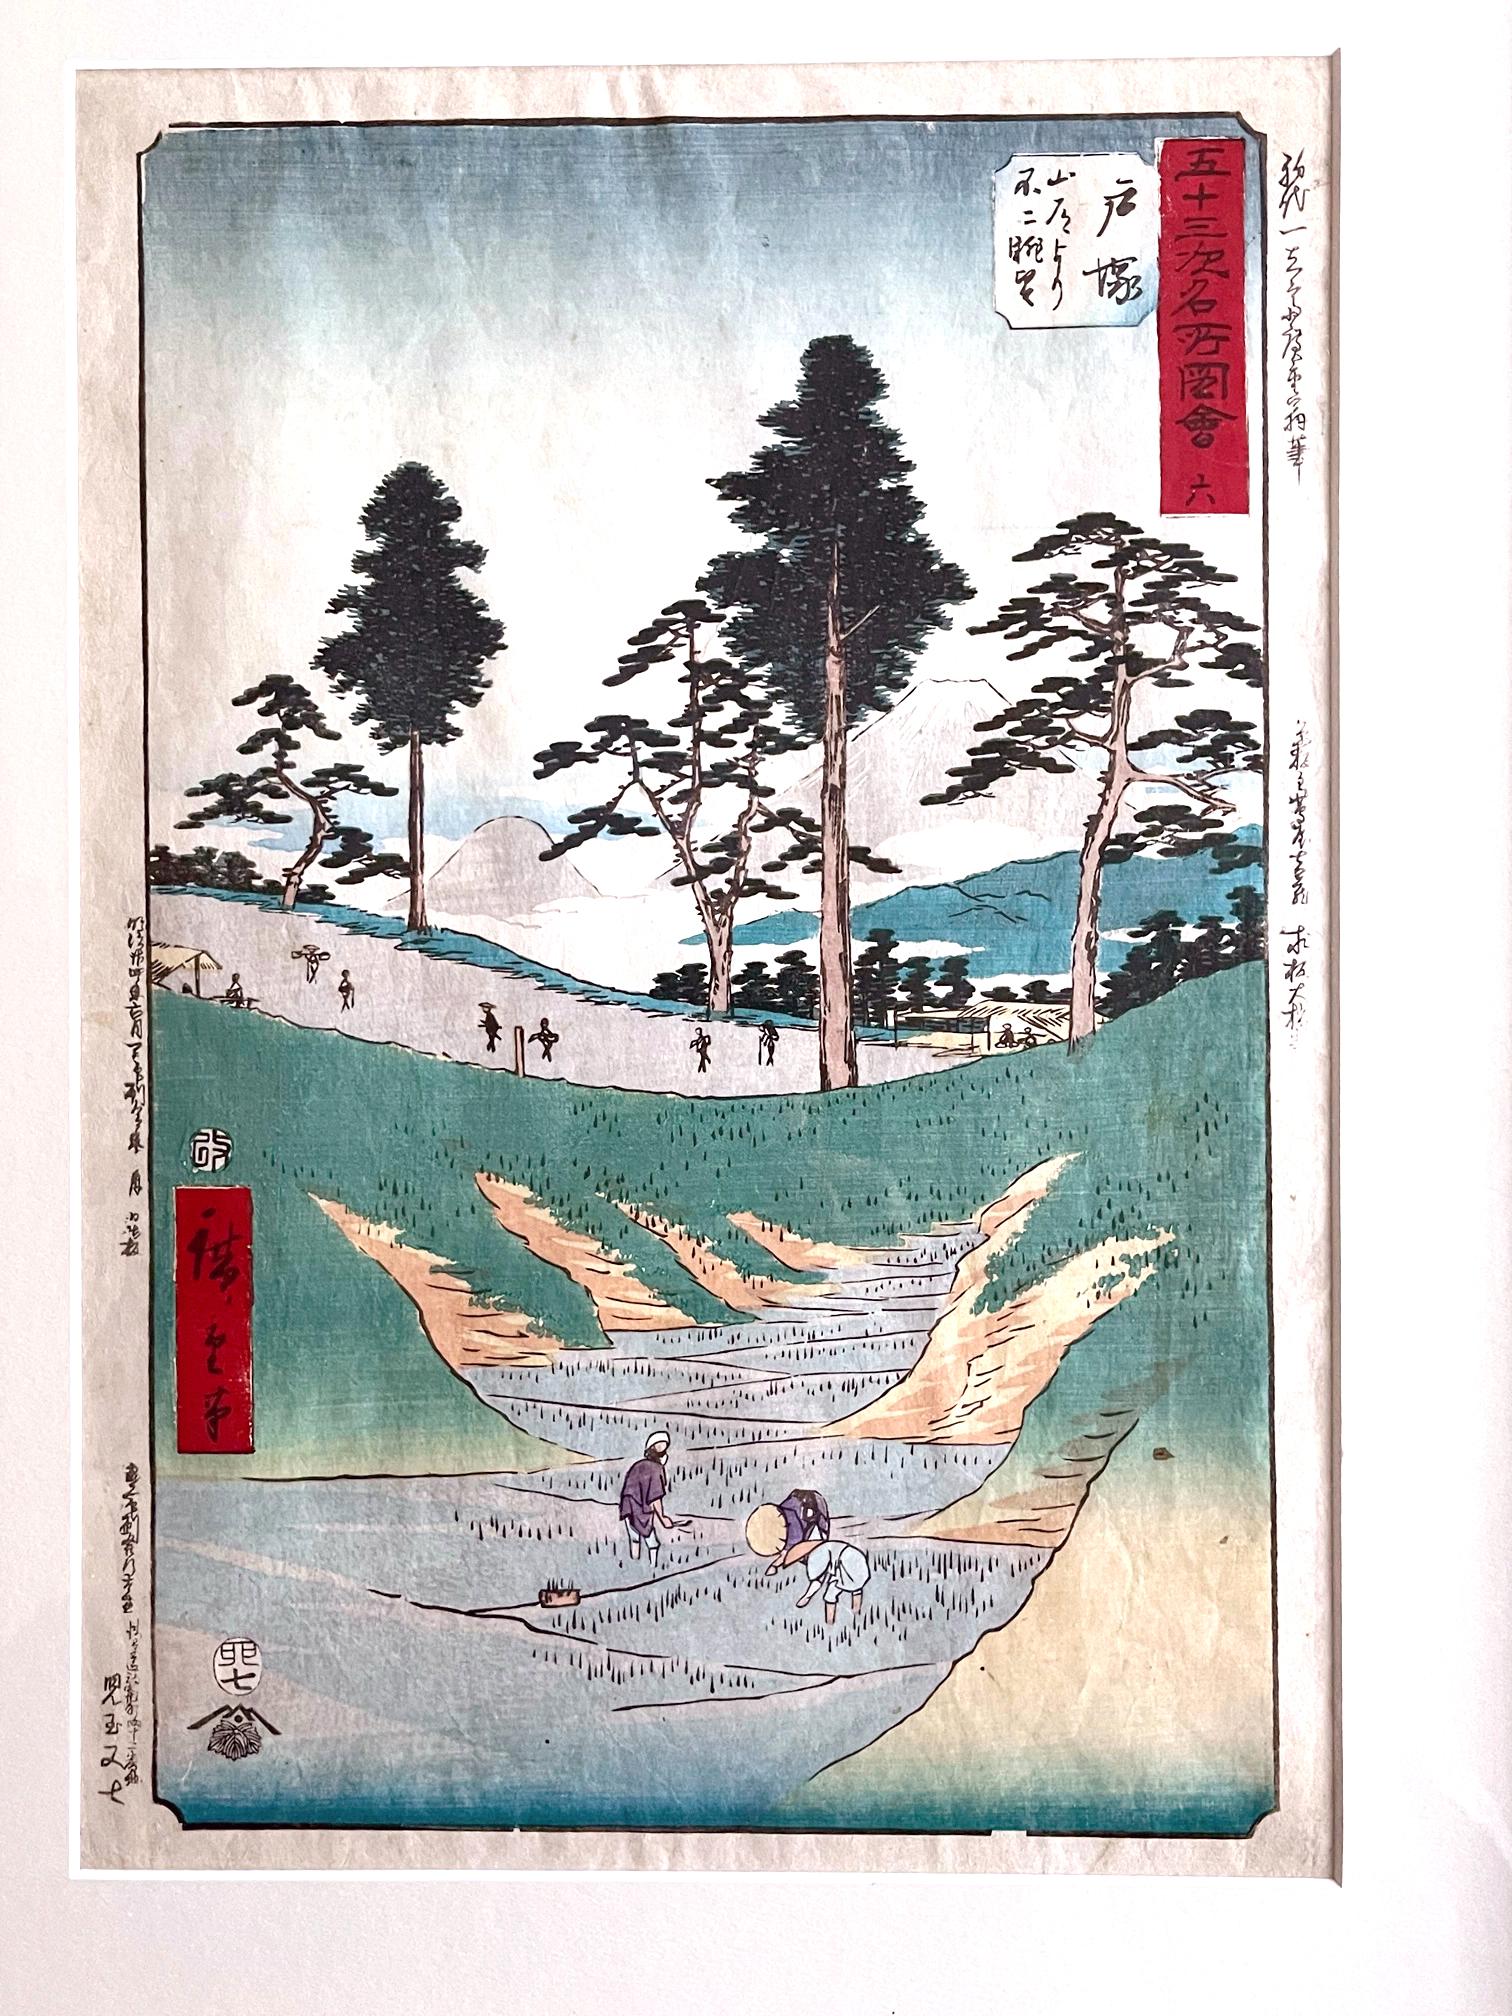 Künstler: Utagawa Hiroshige (1797 - 1858)
Serie: Die dreiundfünfzig Stationen des Tokaido (aufrecht)
Nummer: 6 Totsuka: Blick auf den Fuji von der Bergstraße aus
(Totsuka, Sando yori Fuji chobo)
Medium: Farbholzschnitt
Datum: 1855
Format: